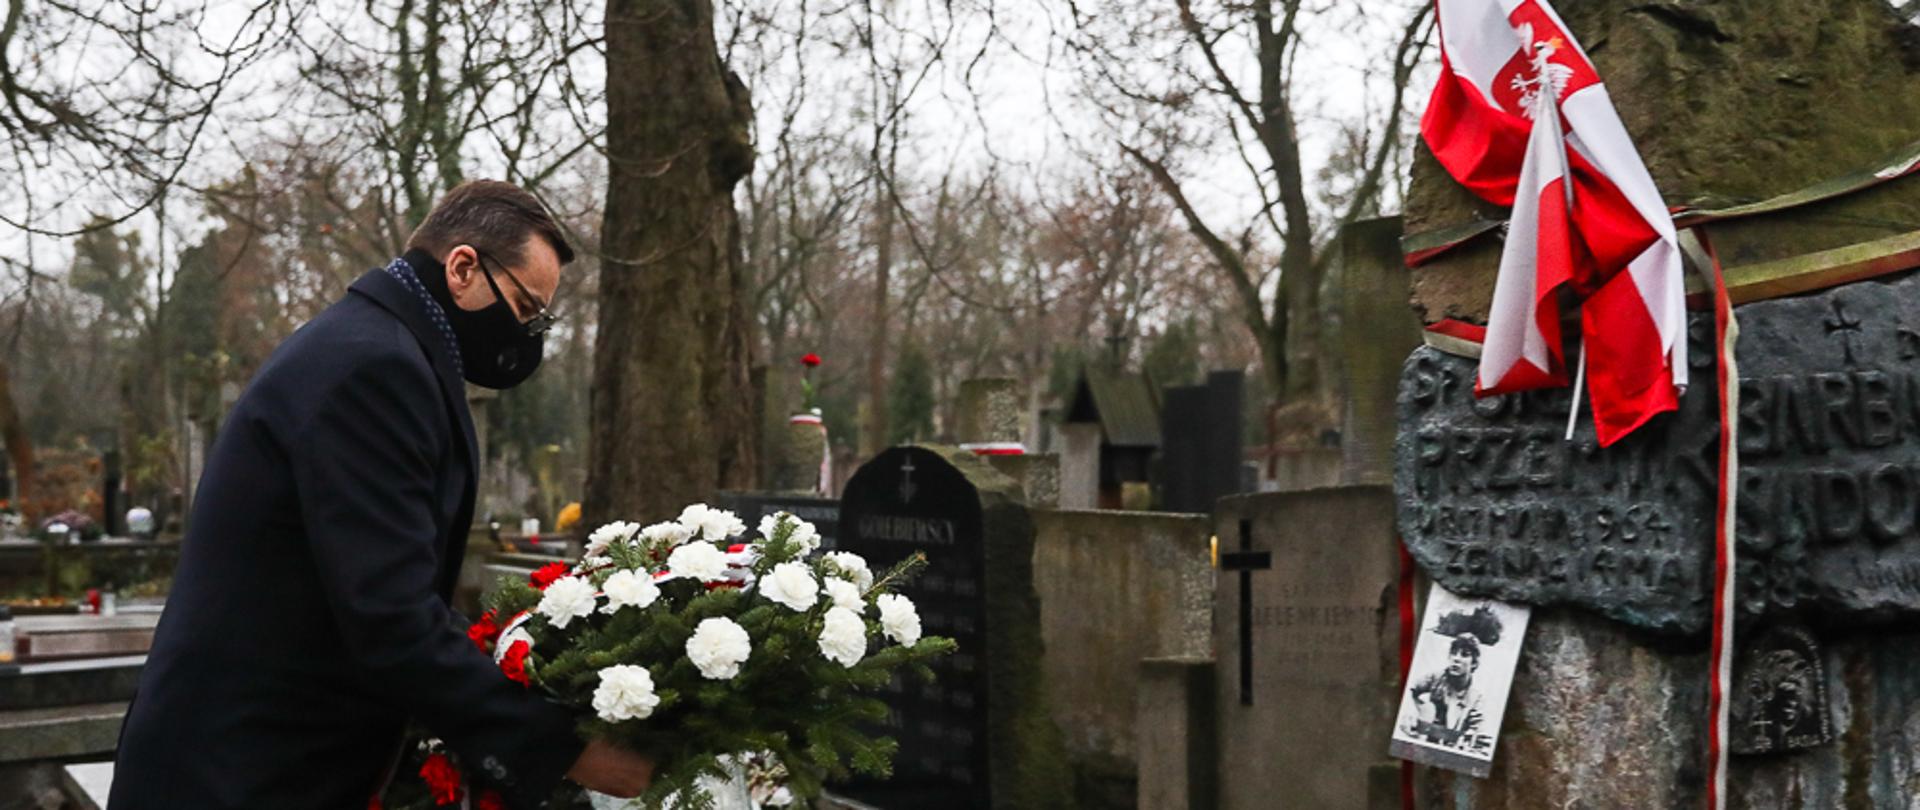 Premier składa kwiaty na grobie Grzegorza Przemyka.